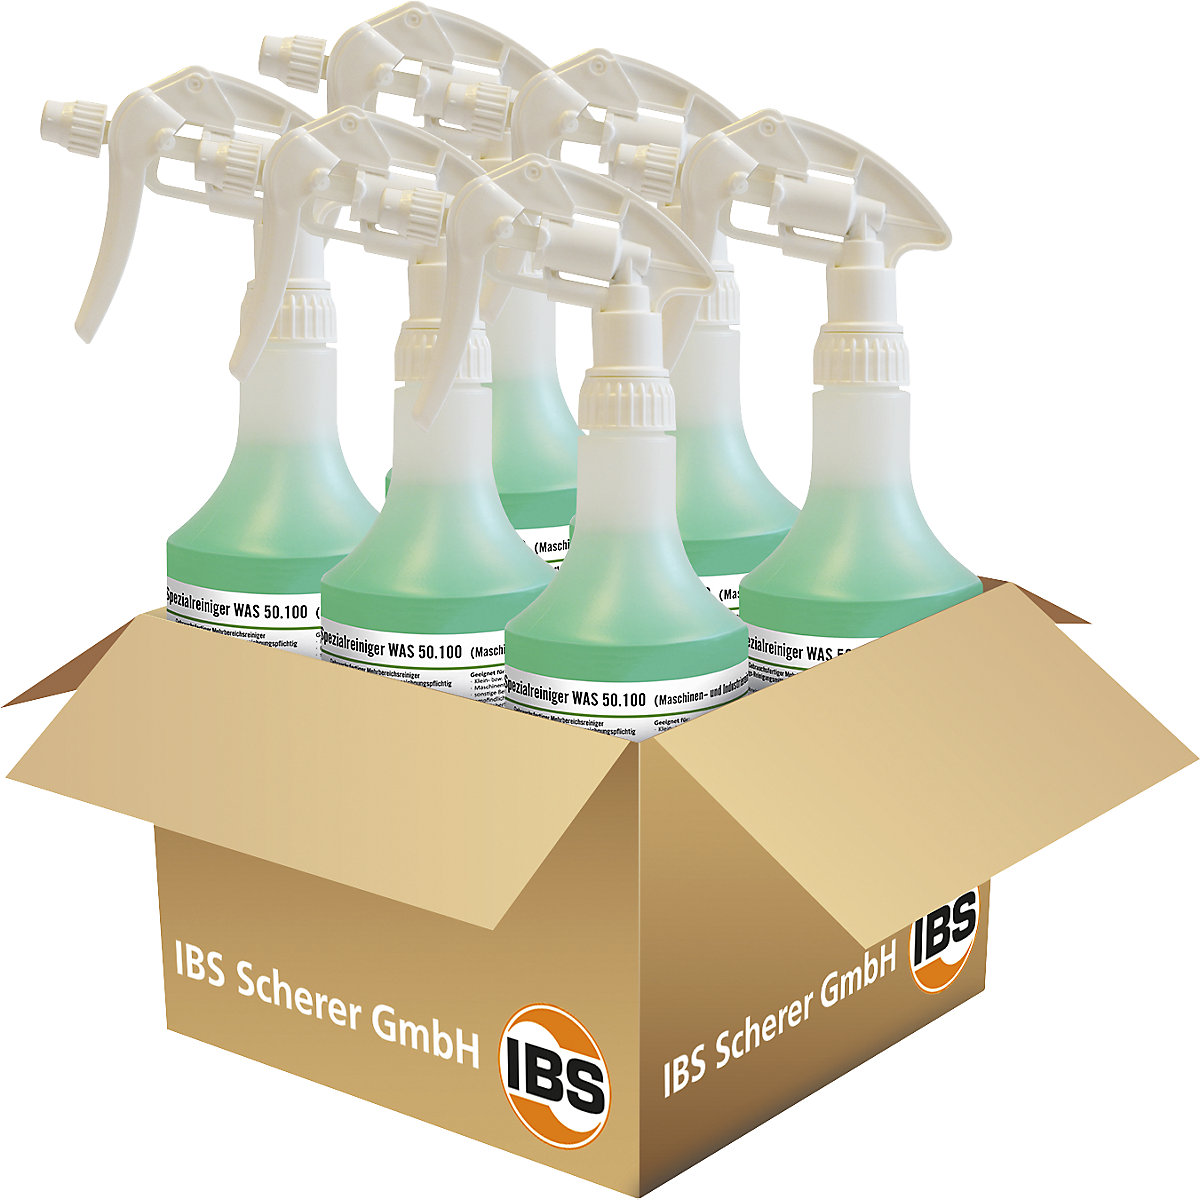 Detergente para máquinas/industrial WAS 50.100 – IBS Scherer